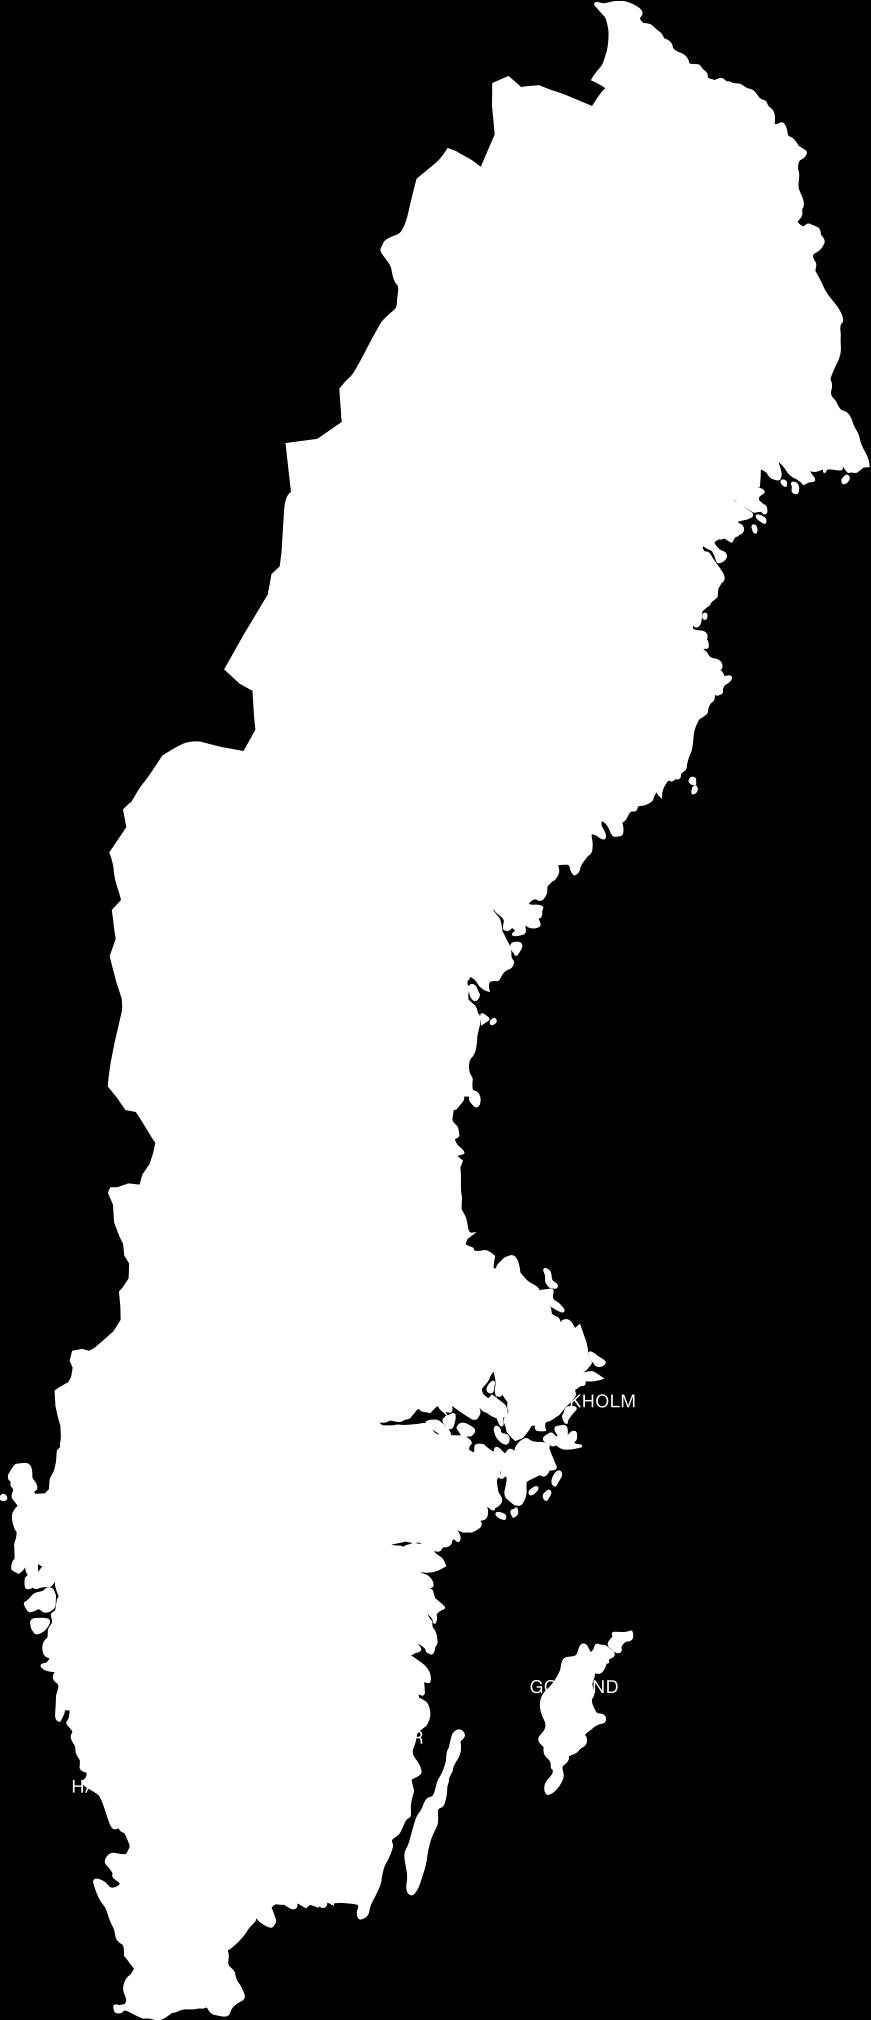 Karta över späd- och småbarnsverksamheter/team 1. Blekinge a. Spädbarnsverksamheten Karlshamn; BUP & BHV b. Knyttet, Karlskrona; BUP & BHV 2. Dalarna a. Familjeterapienheten, Falun; BUP 3.